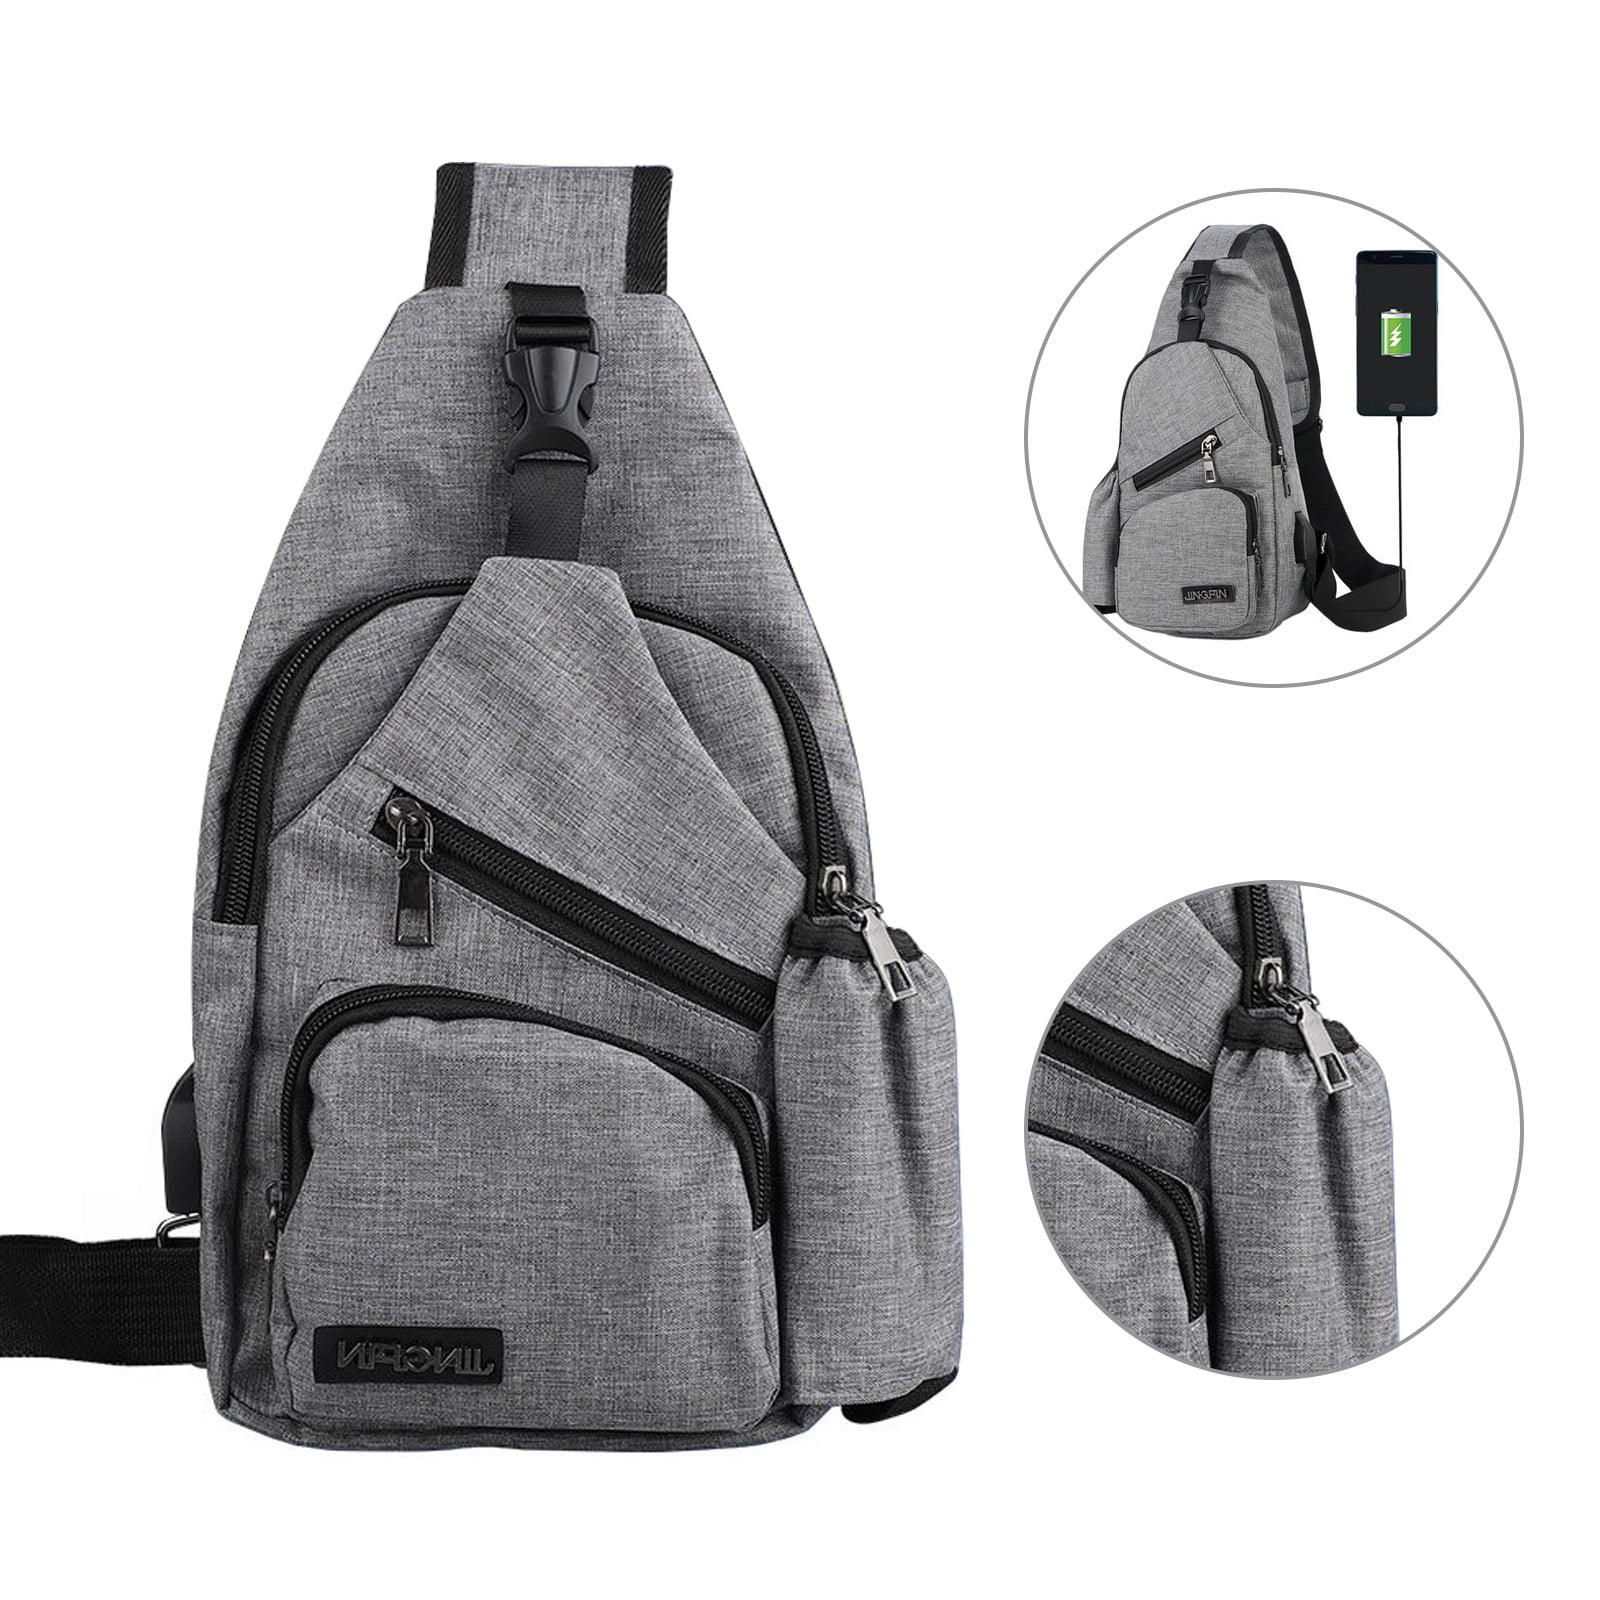 Rucksack Shoulder Day Pack Travel Hiking School Bag Sports Sale Work Backpack 